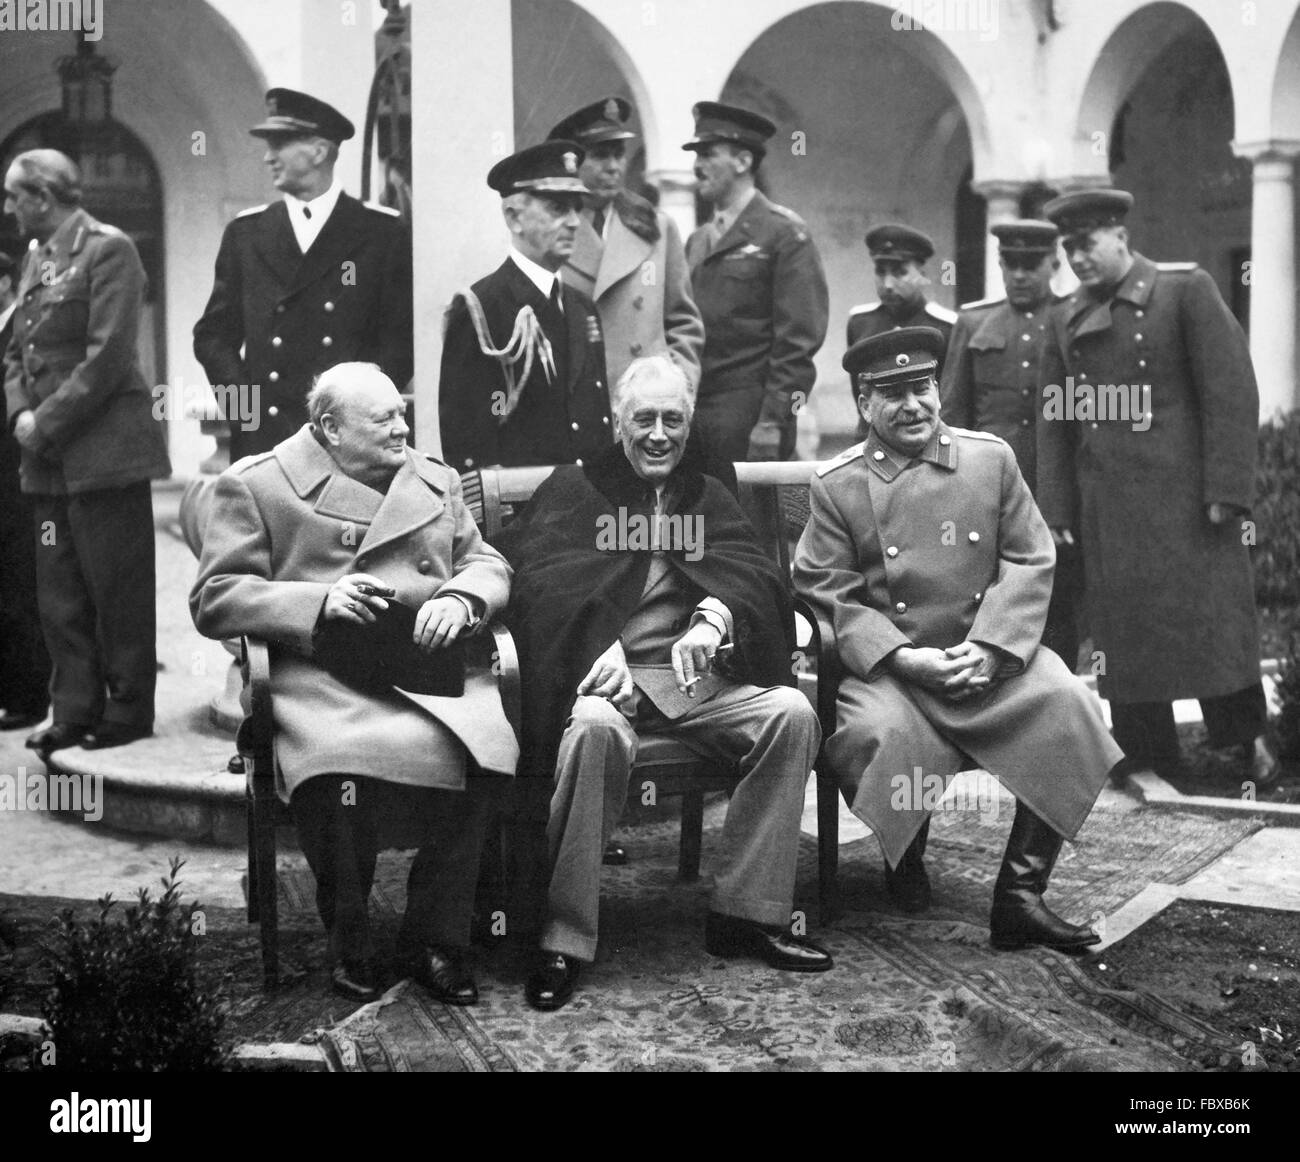 Konferenz von Jalta, Februar 1945. Der britische Premierminister Winston Churchill, US-Präsident Franklin D Roosevelt und der sowjetische Premier Josef Stalin treffen bei der "Big Three" Konferenz von Jalta im Februar 1945, Pläne für die endgültige Niederlage des nationalsozialistischen Deutschland Stockfoto